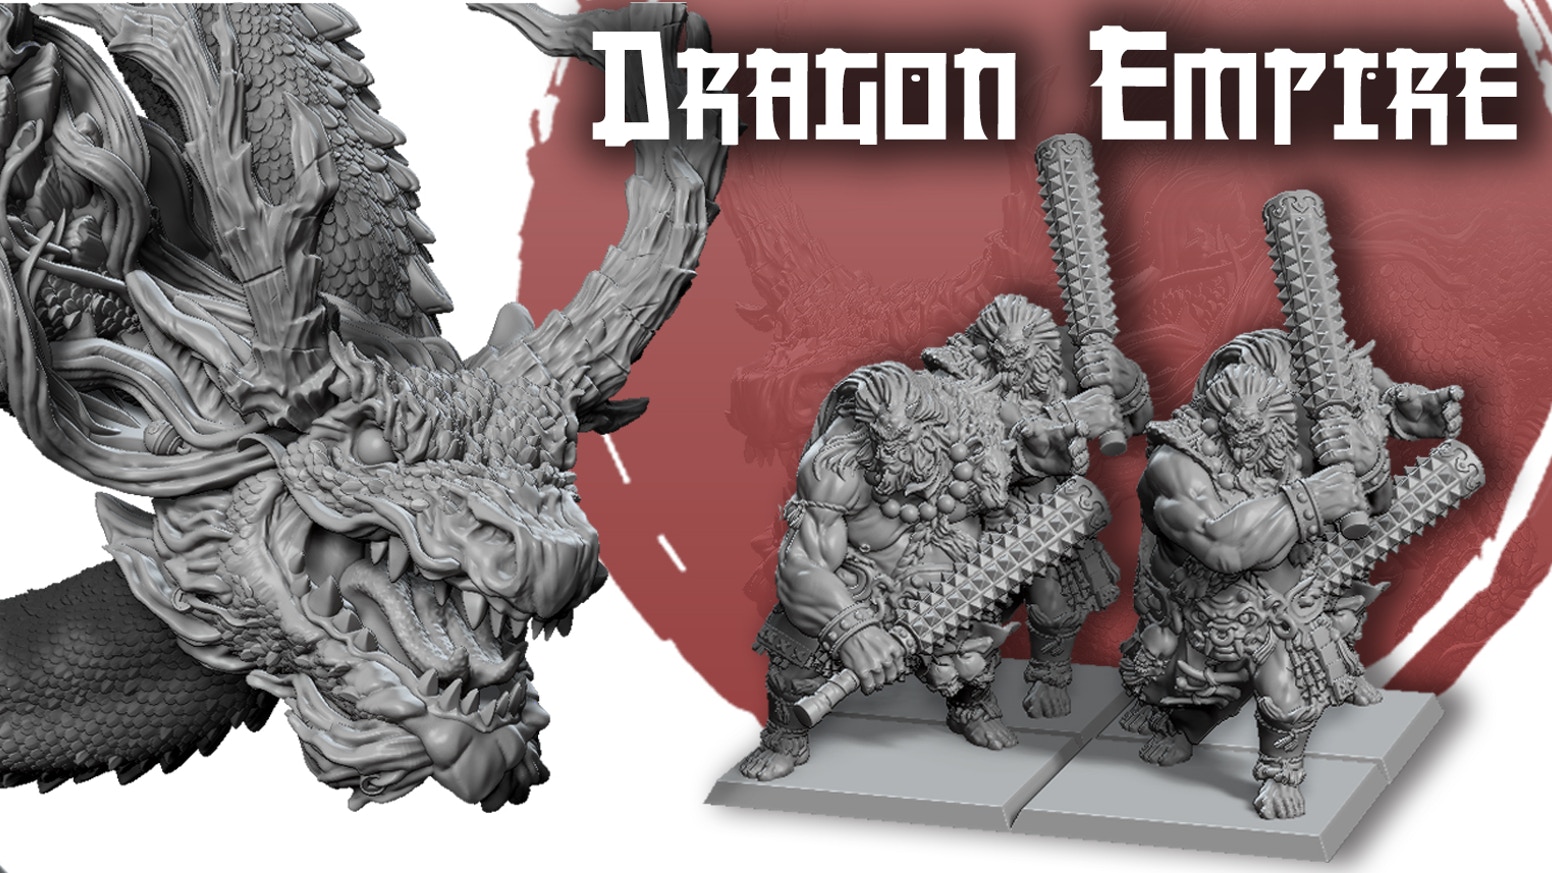 The Dragon Empire miniature collection premiere!